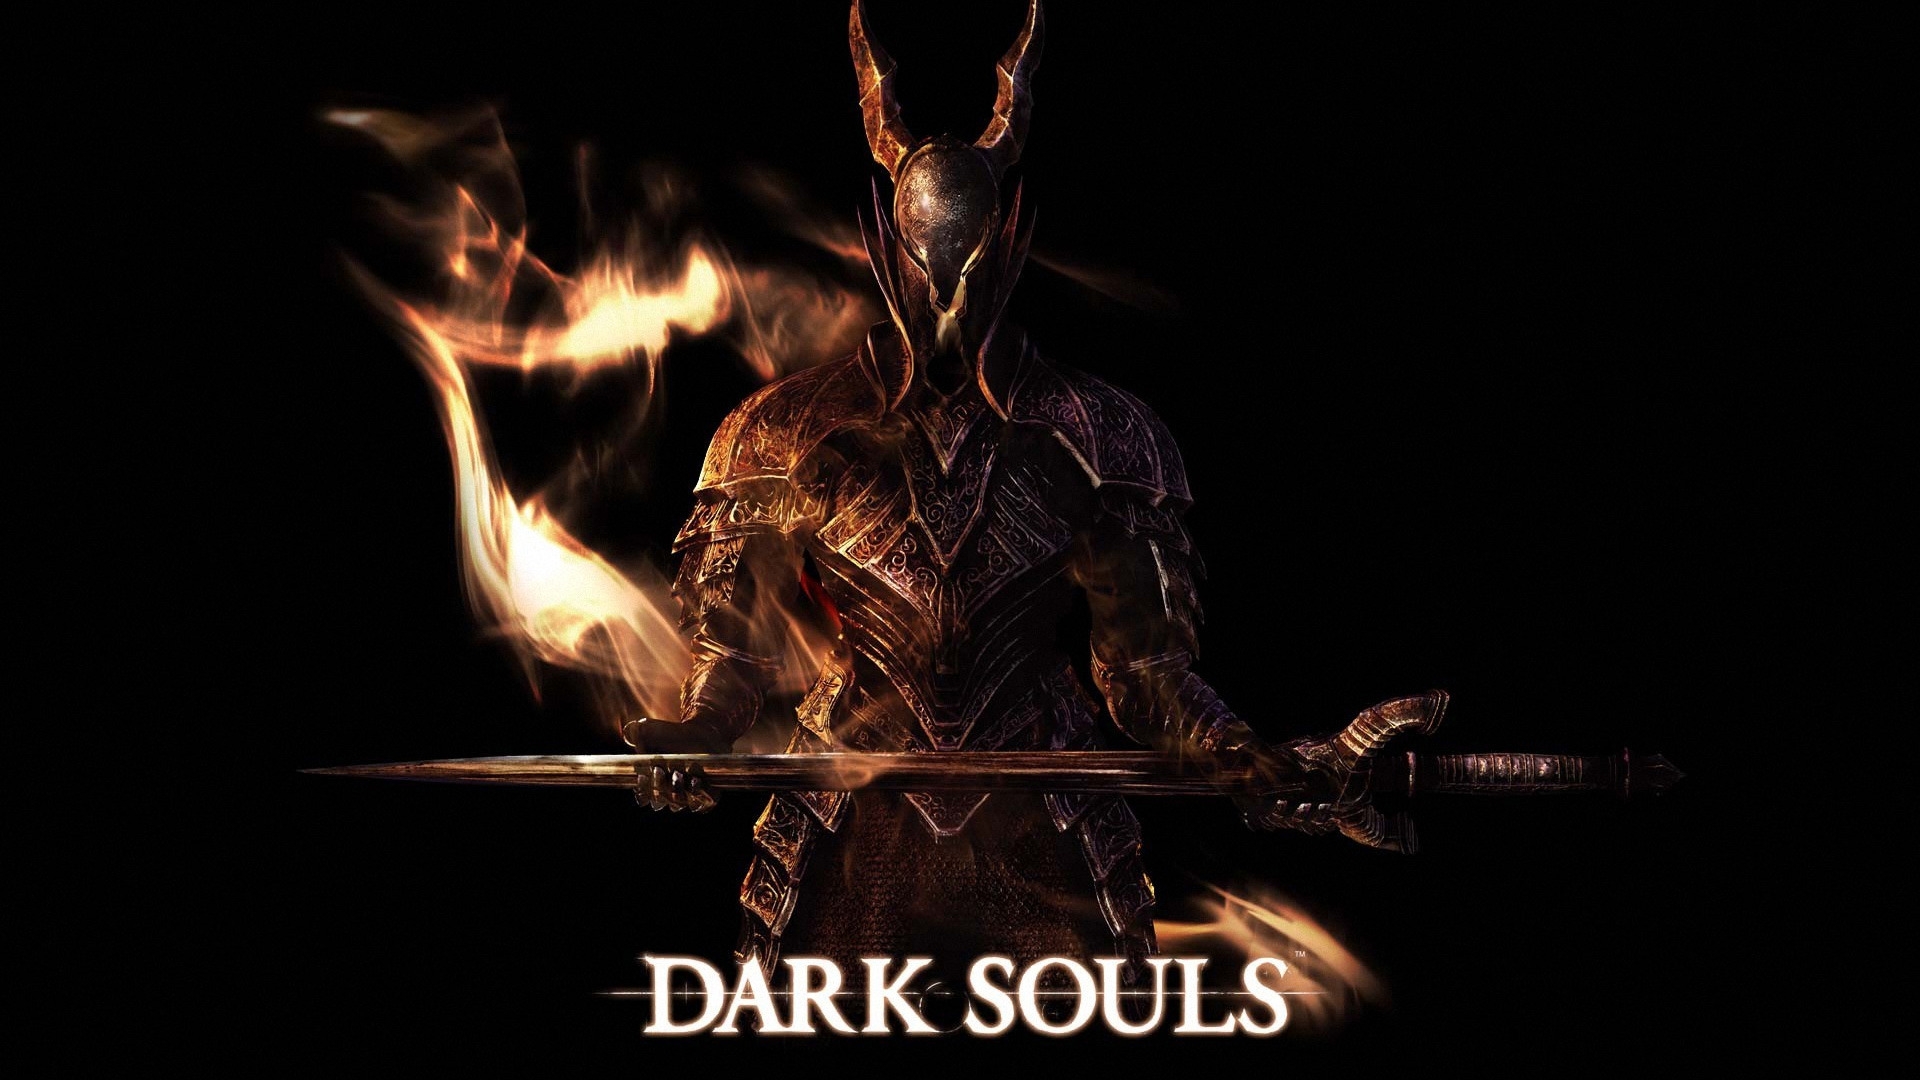 Dark Souls Art for 1920 x 1080 HDTV 1080p resolution